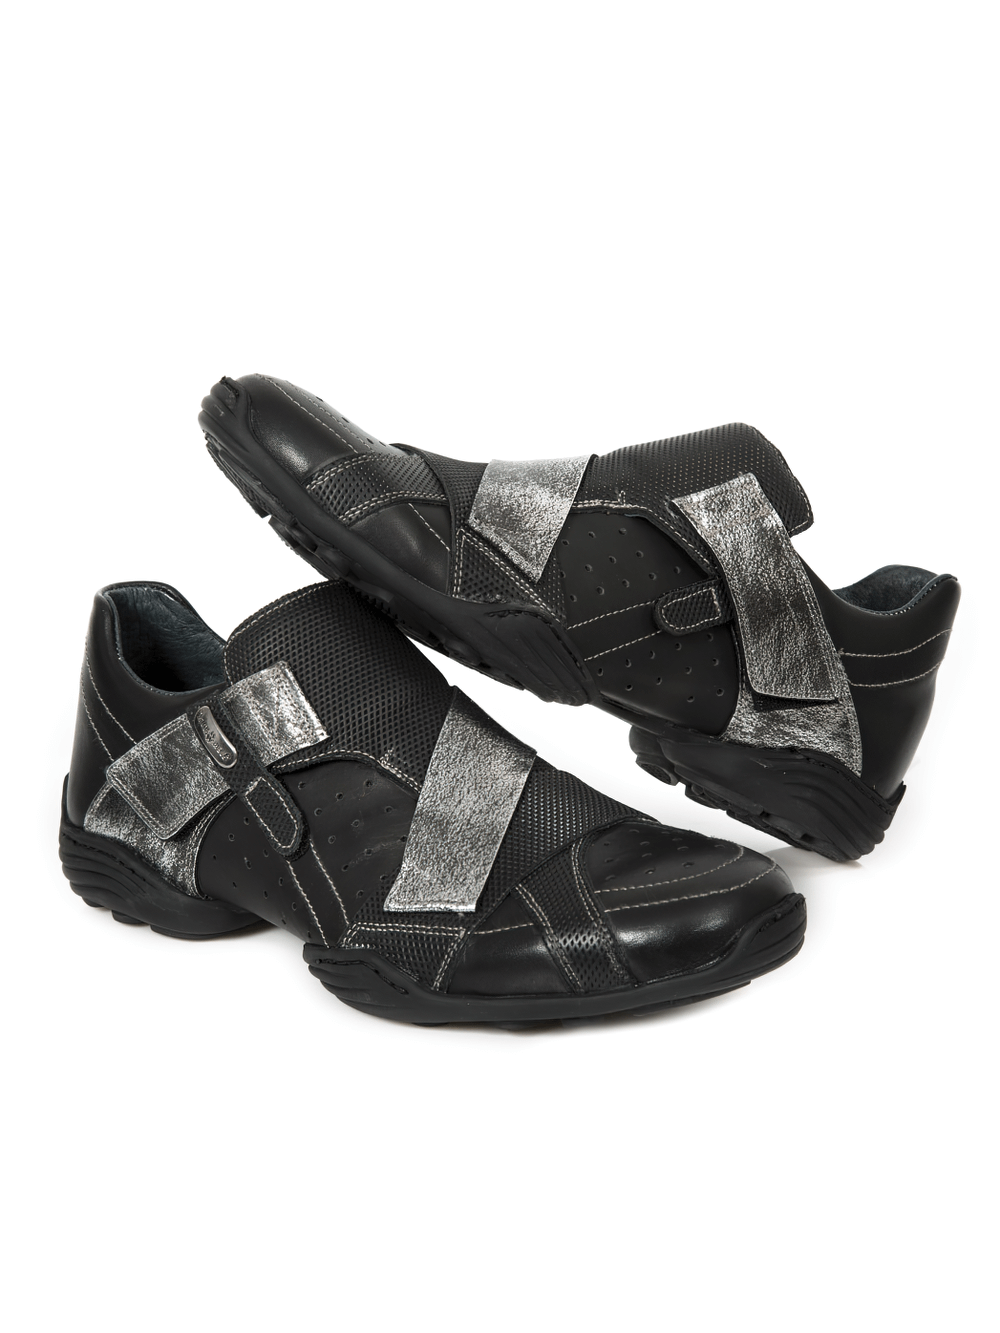 NEW ROCK Chaussures Rock noires avec sangle Velcro argentée pour hommes